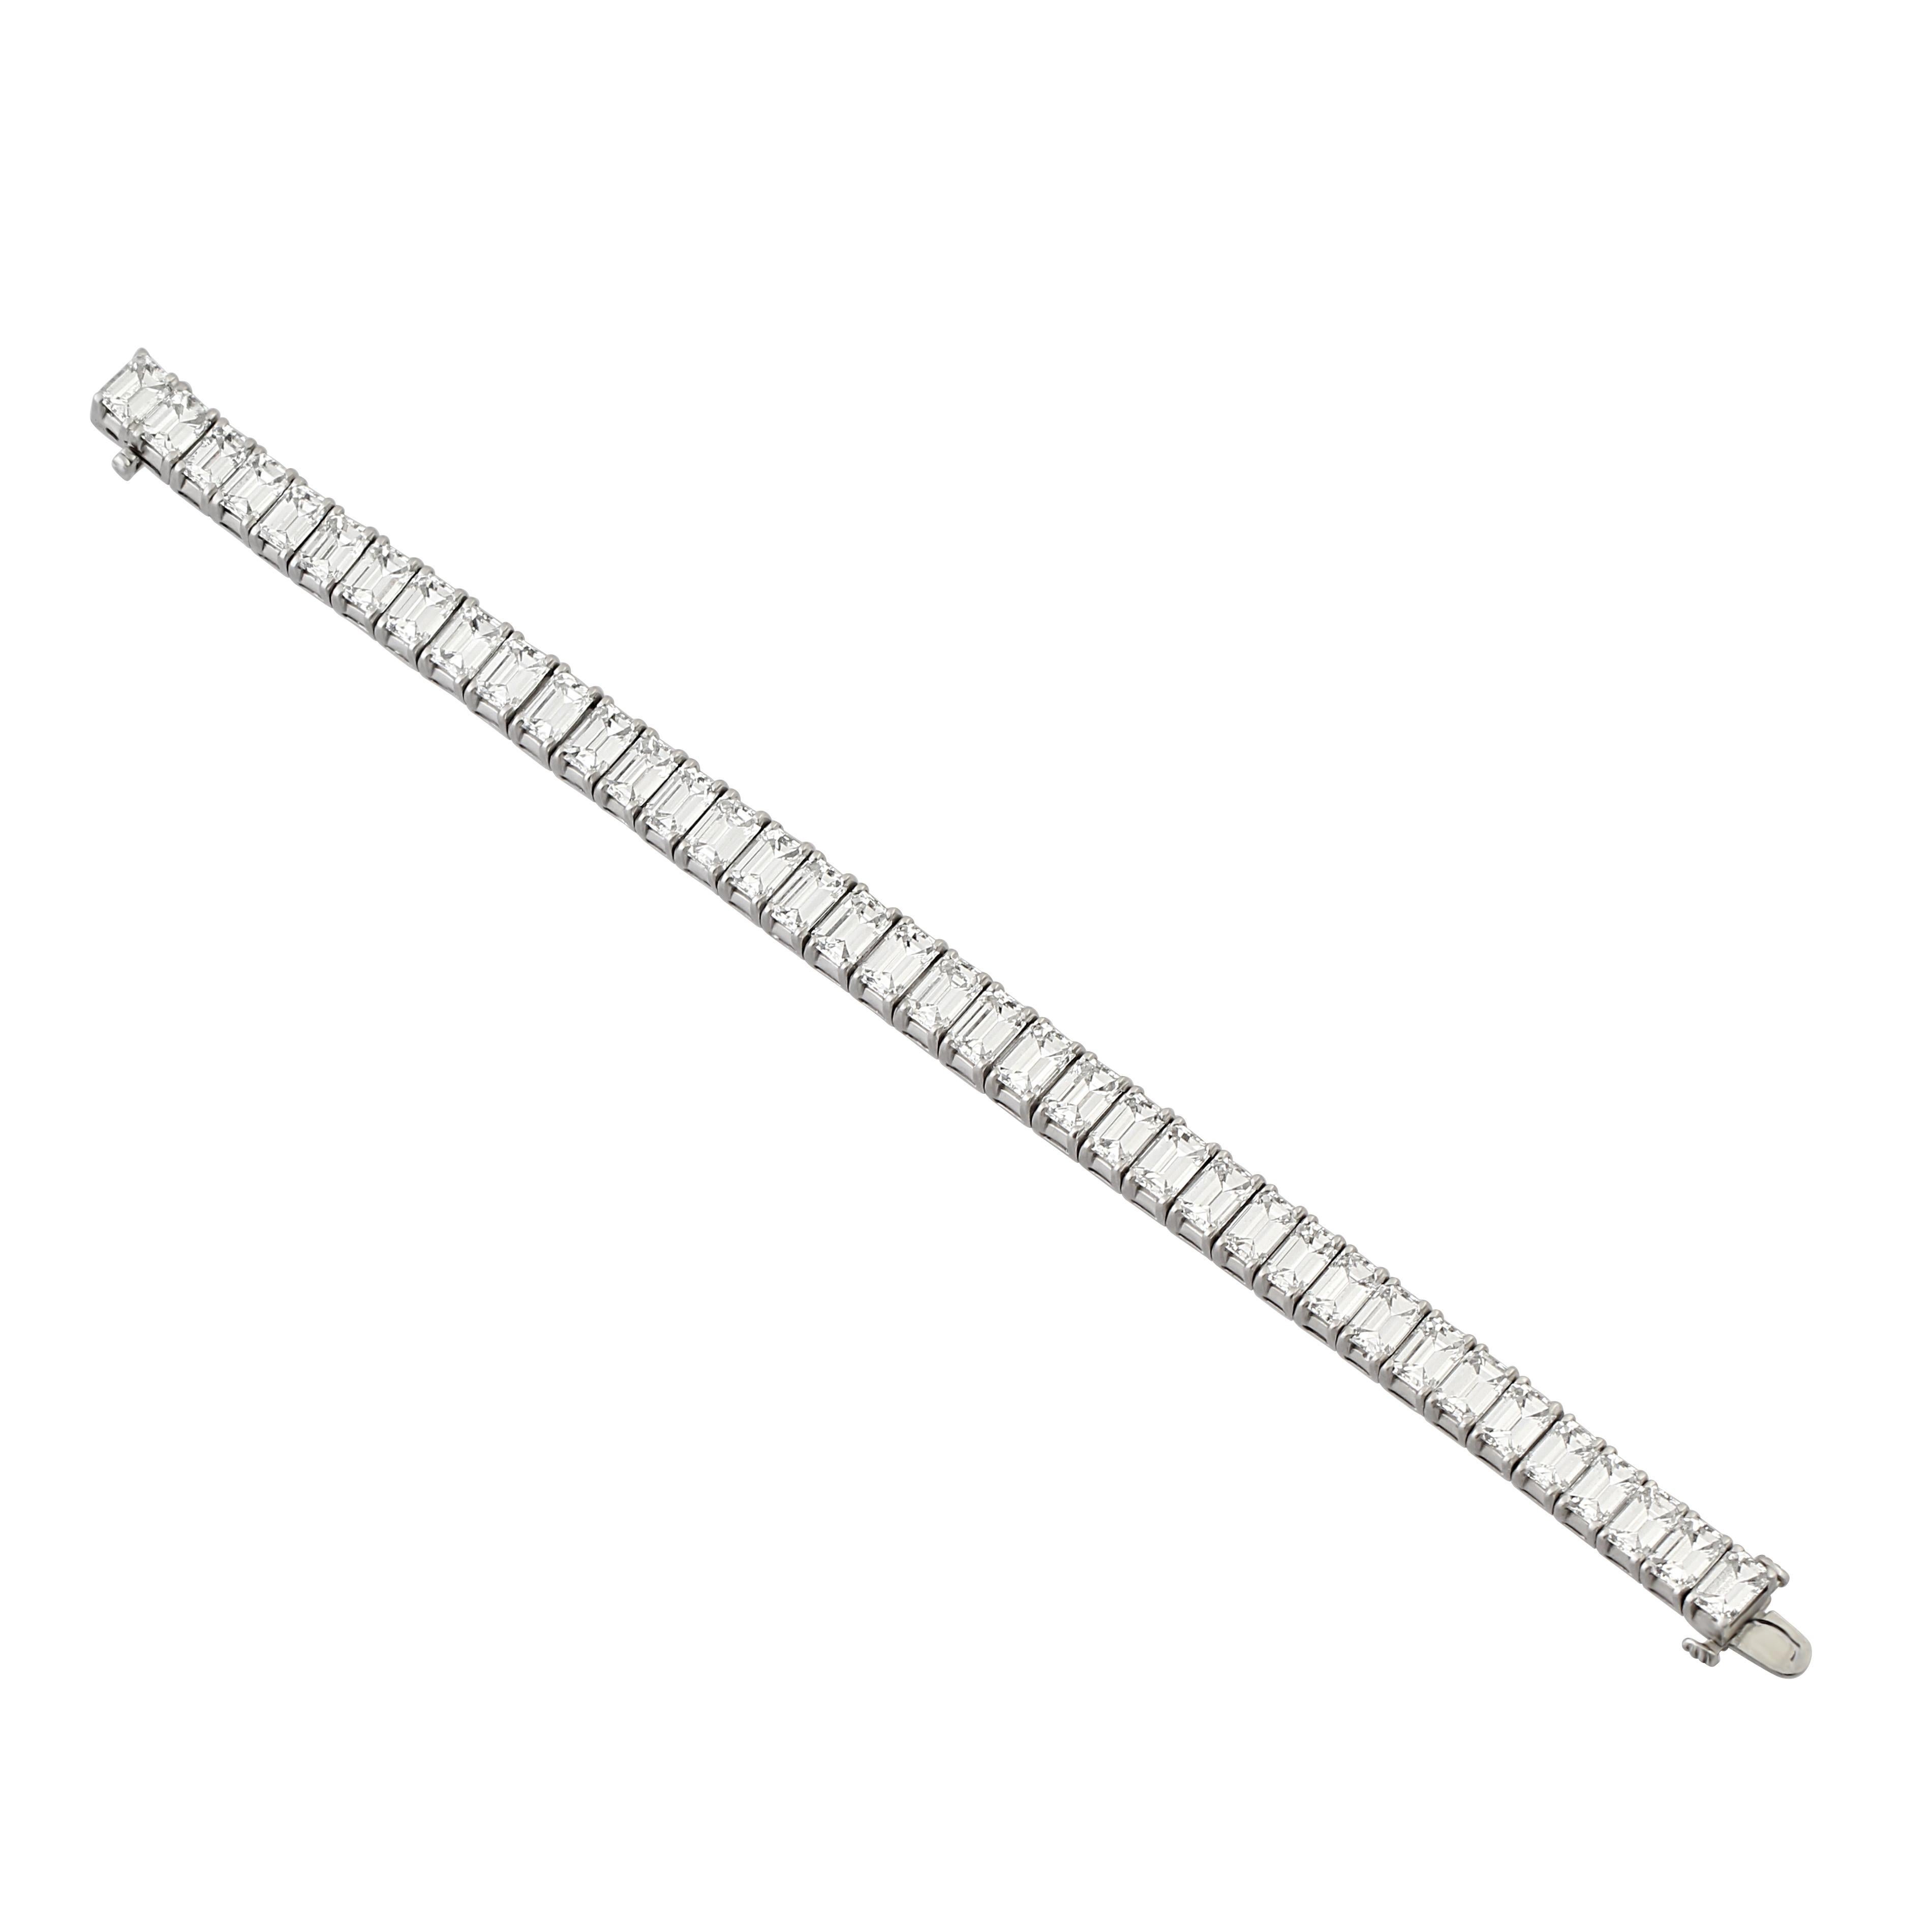 Bracelet en platine et diamant, serti de 38 diamants taillés en escalier. Poids total des diamants = 38,15 carats.
